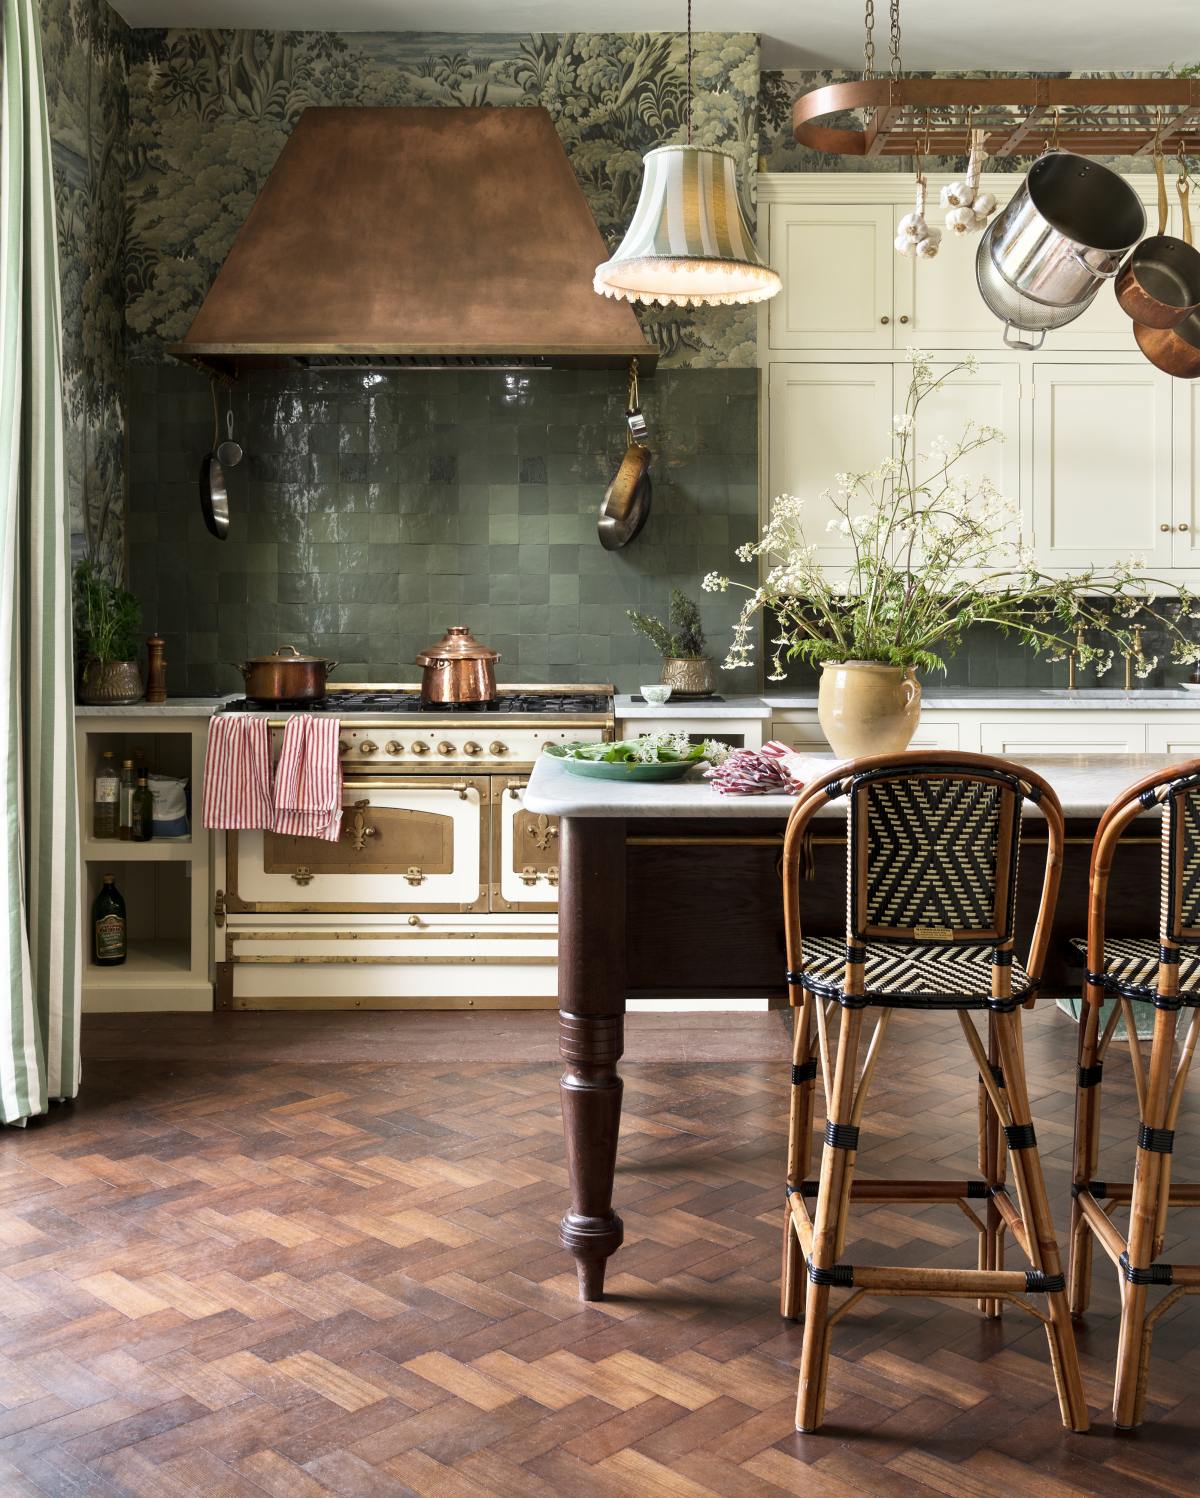 dreamy deVOL bespoke kitchen - kitchen design - design remodel - kitchen island